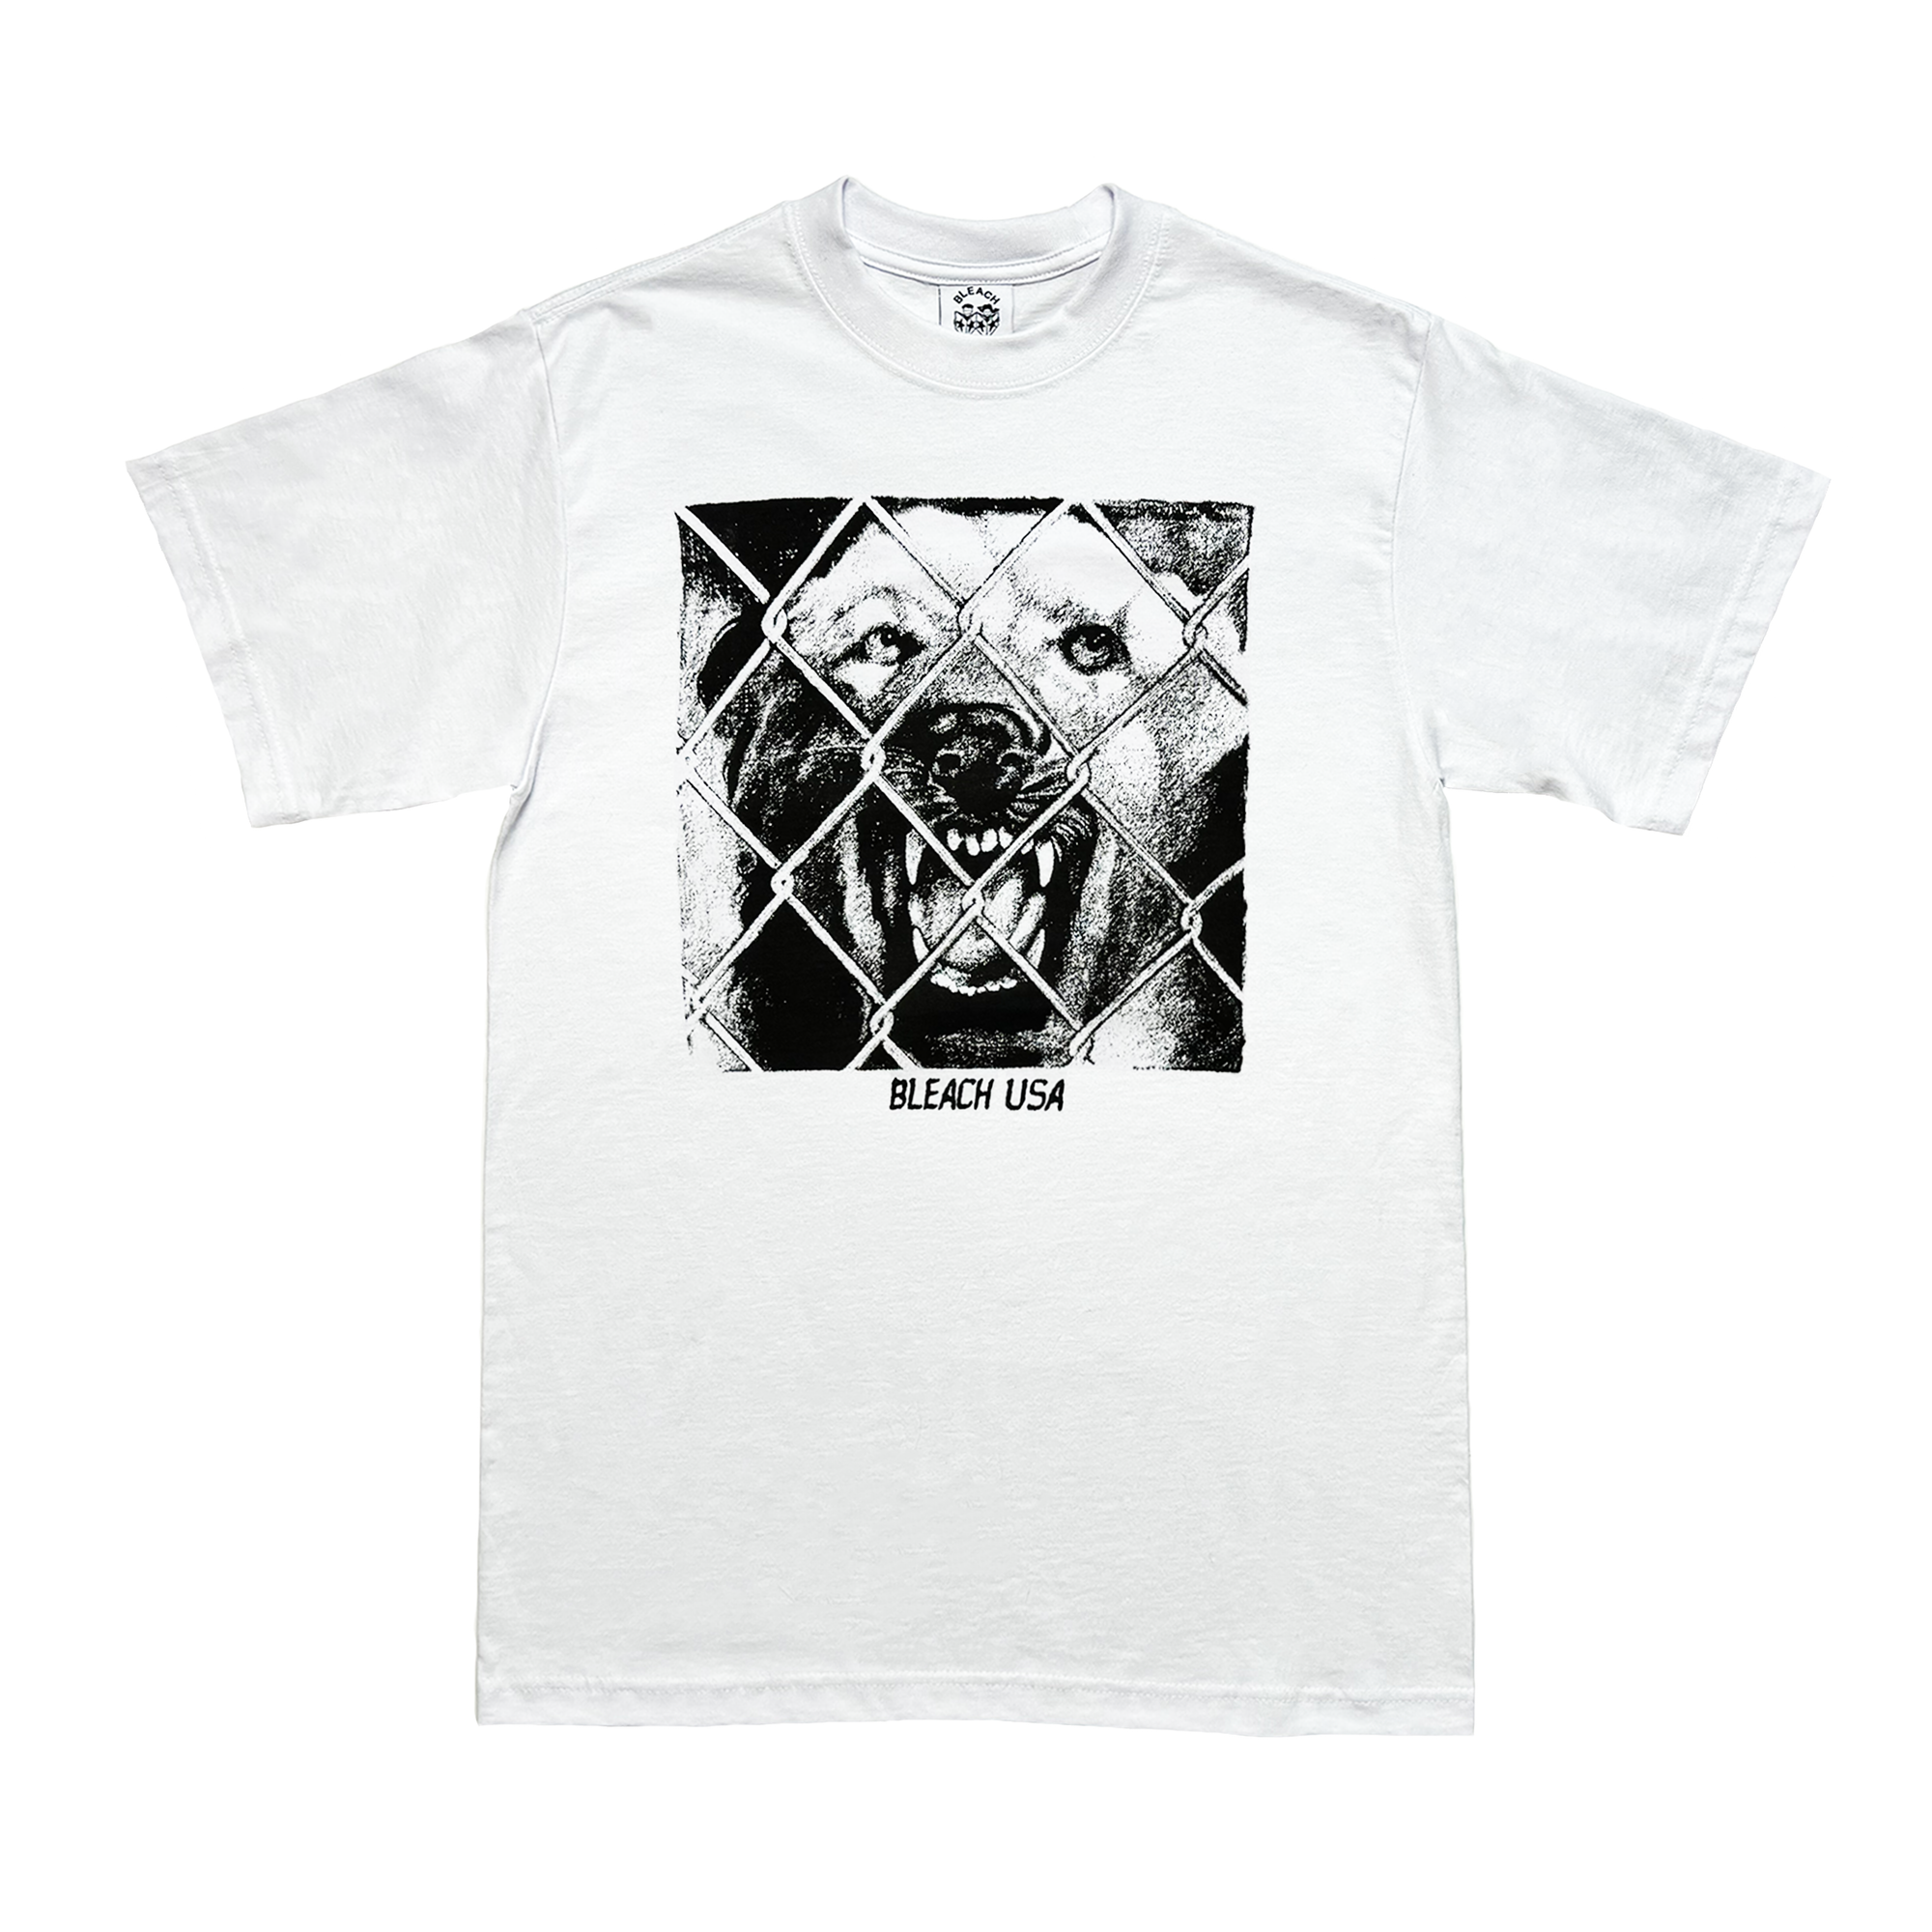 Bleach USA Eat Dog Shirt - White